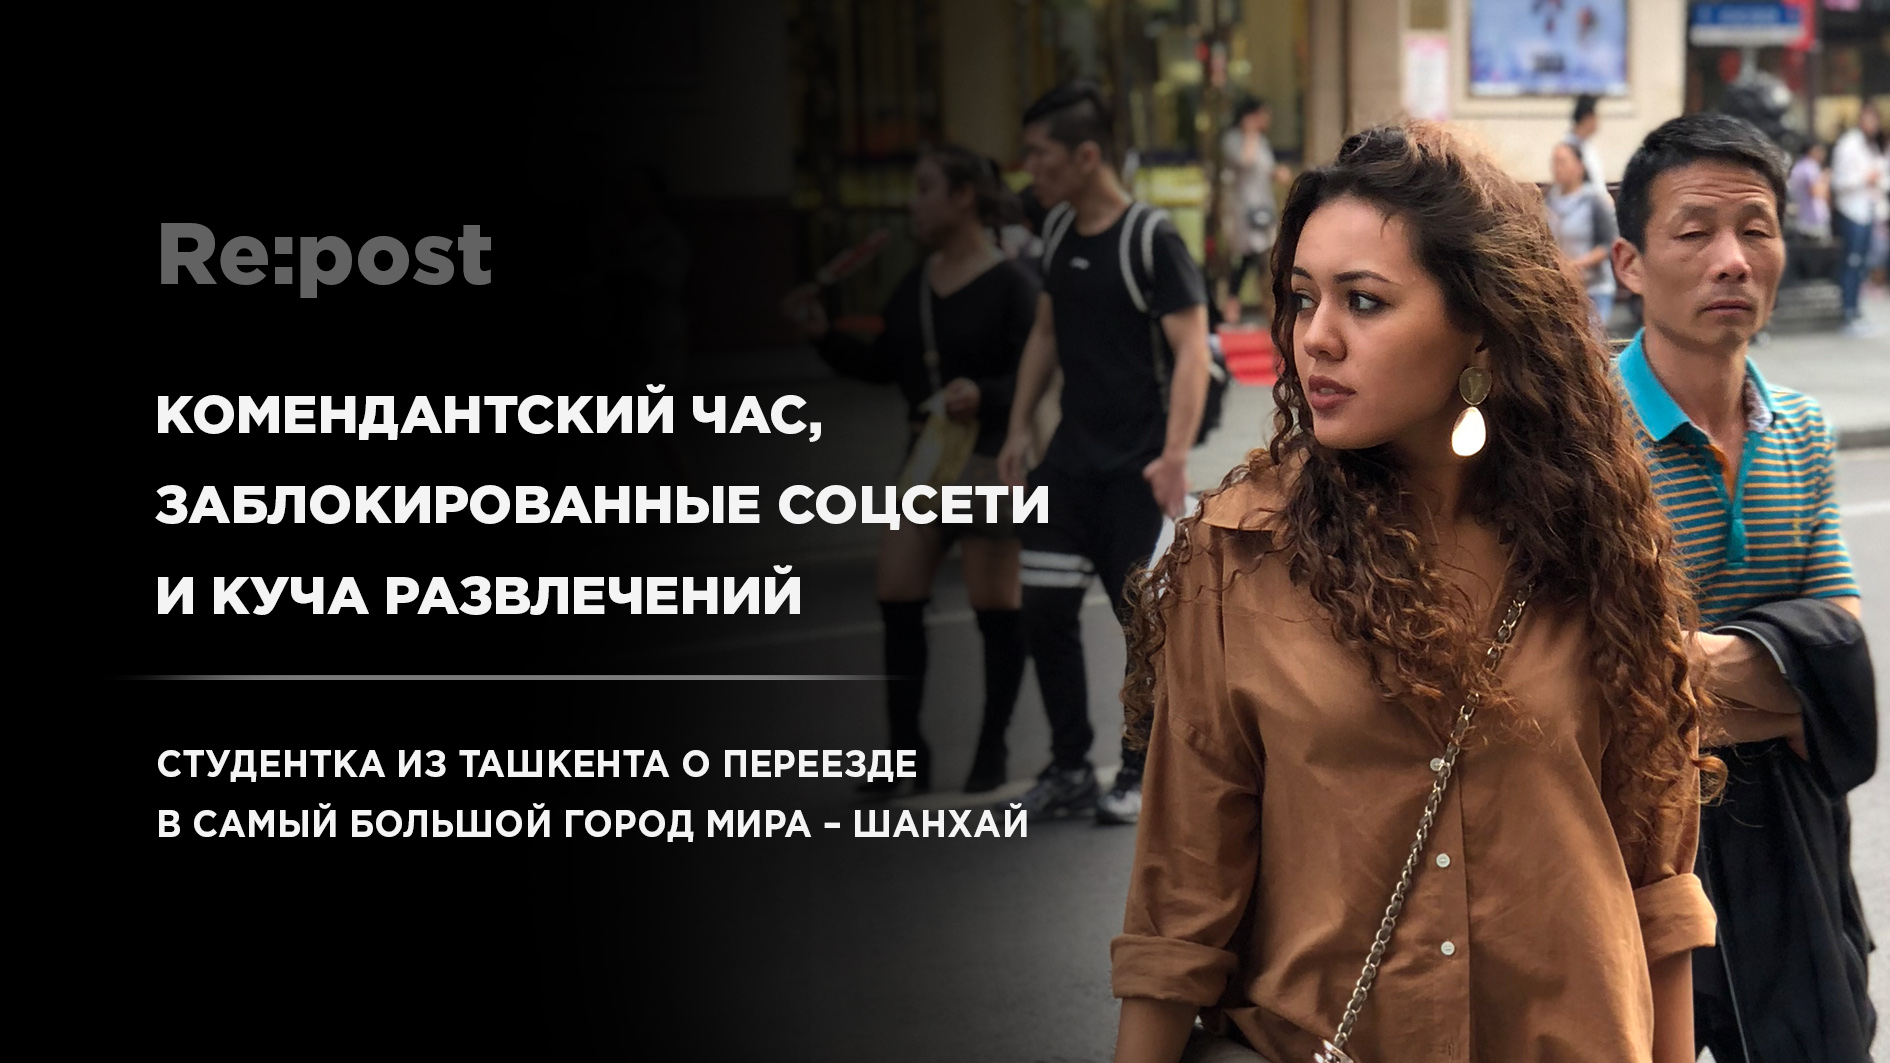 Чем живет крупнейший город мира глазами студентки из Ташкента